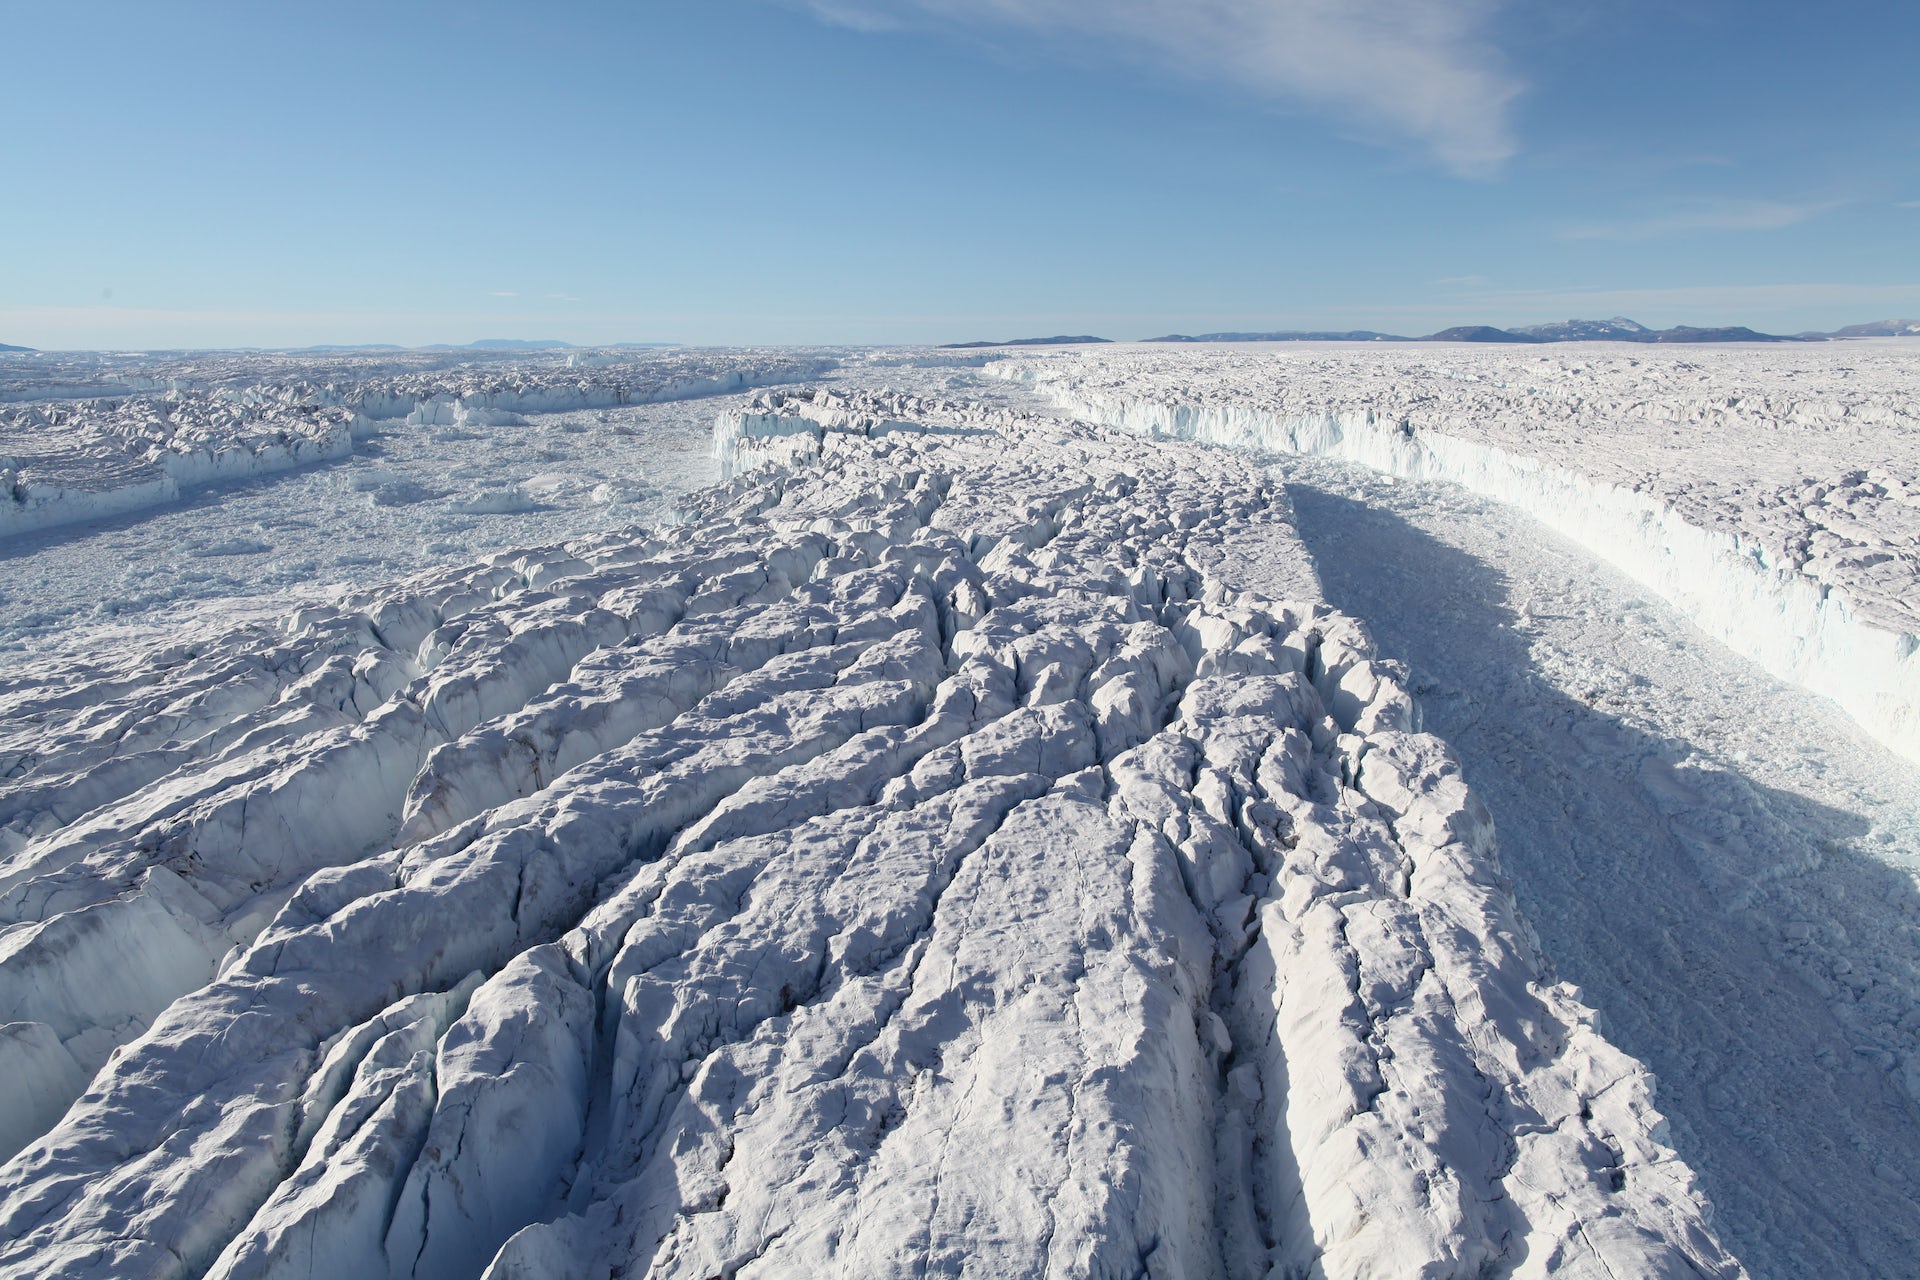 Les plates-formes de glace du Groenland, qui protègent la calotte polaire, s’amenuisent progressivement